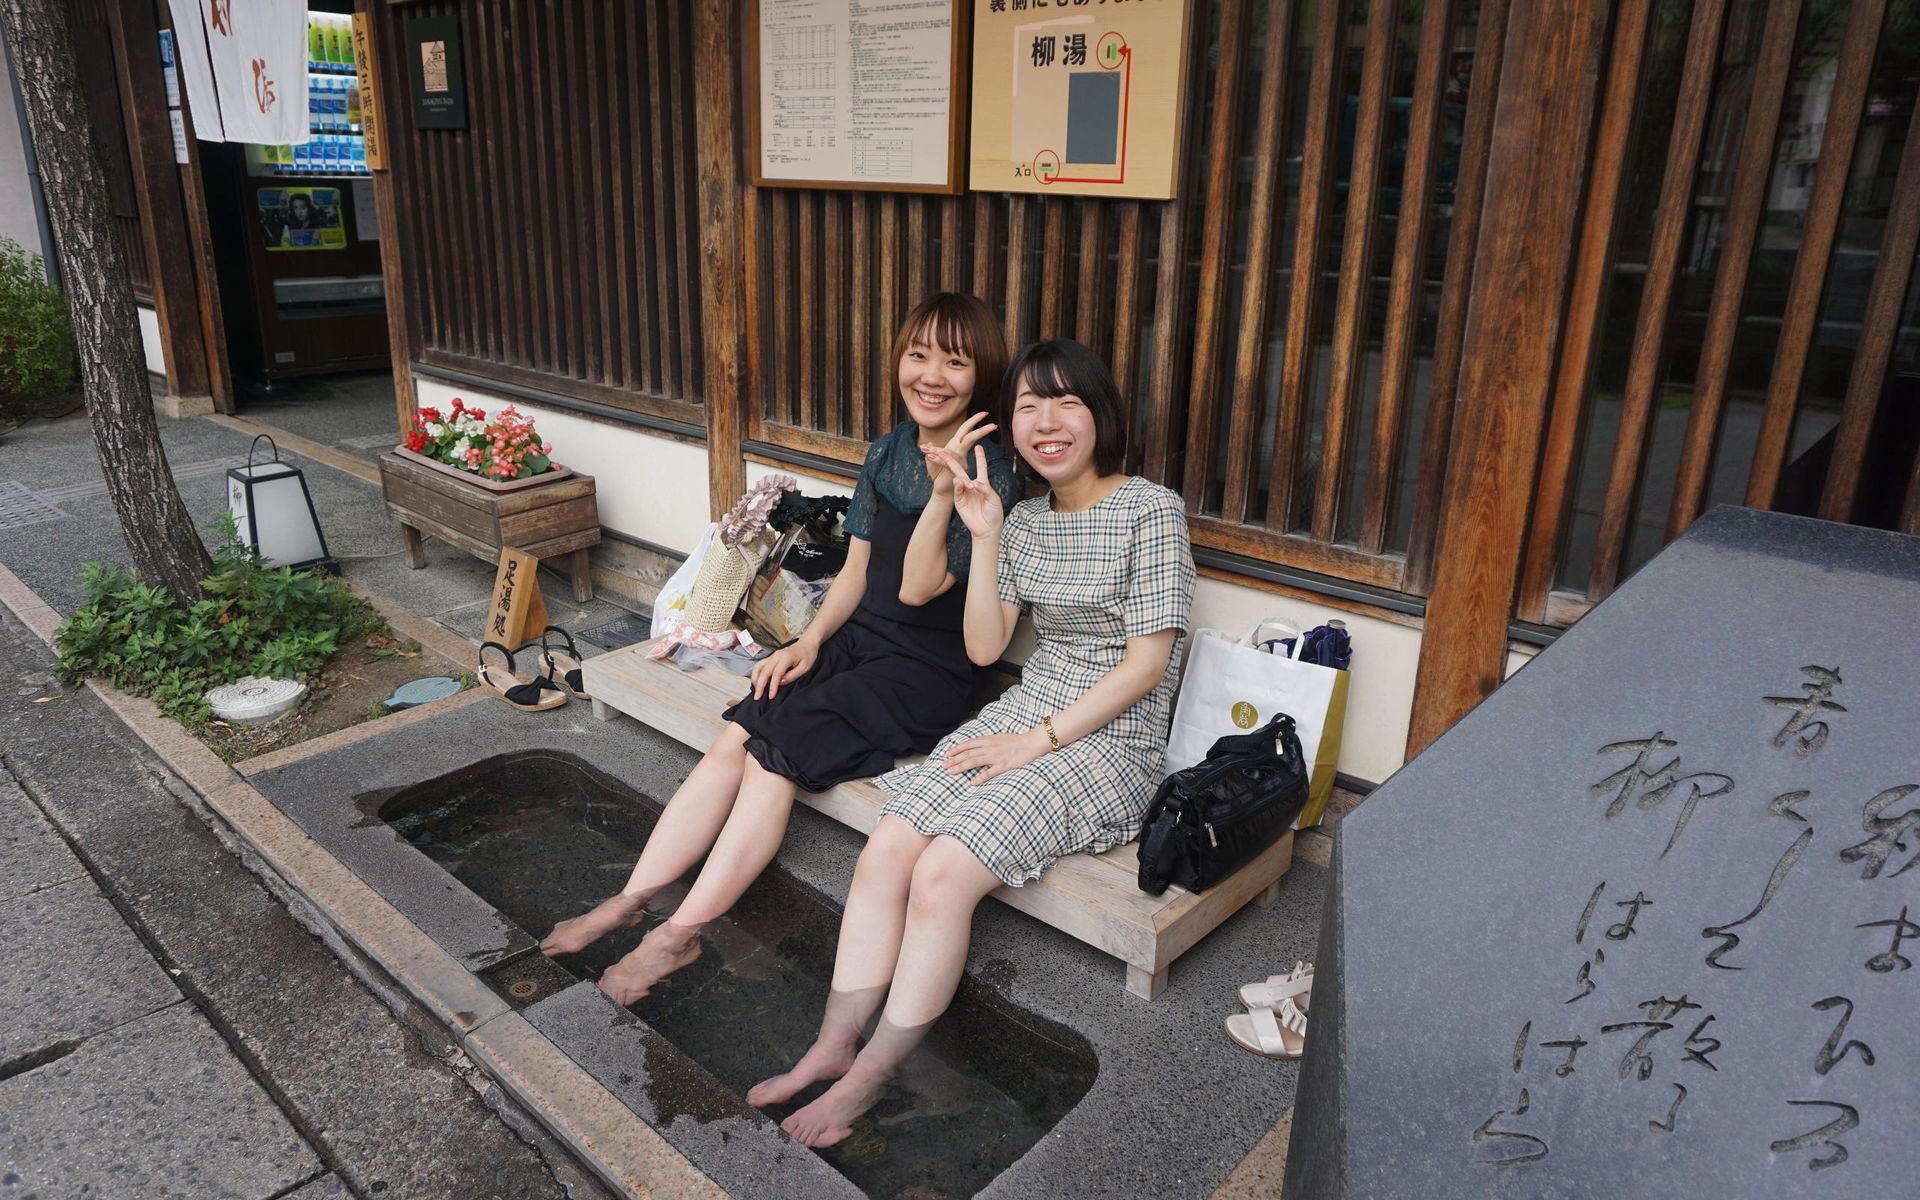 På gatorna utanför badhusen i Kinosakionsen finns möjlighet för trötta besökare att stanna upp ett tag och ta sig ett fotbad i det mineralrika vattnet. 